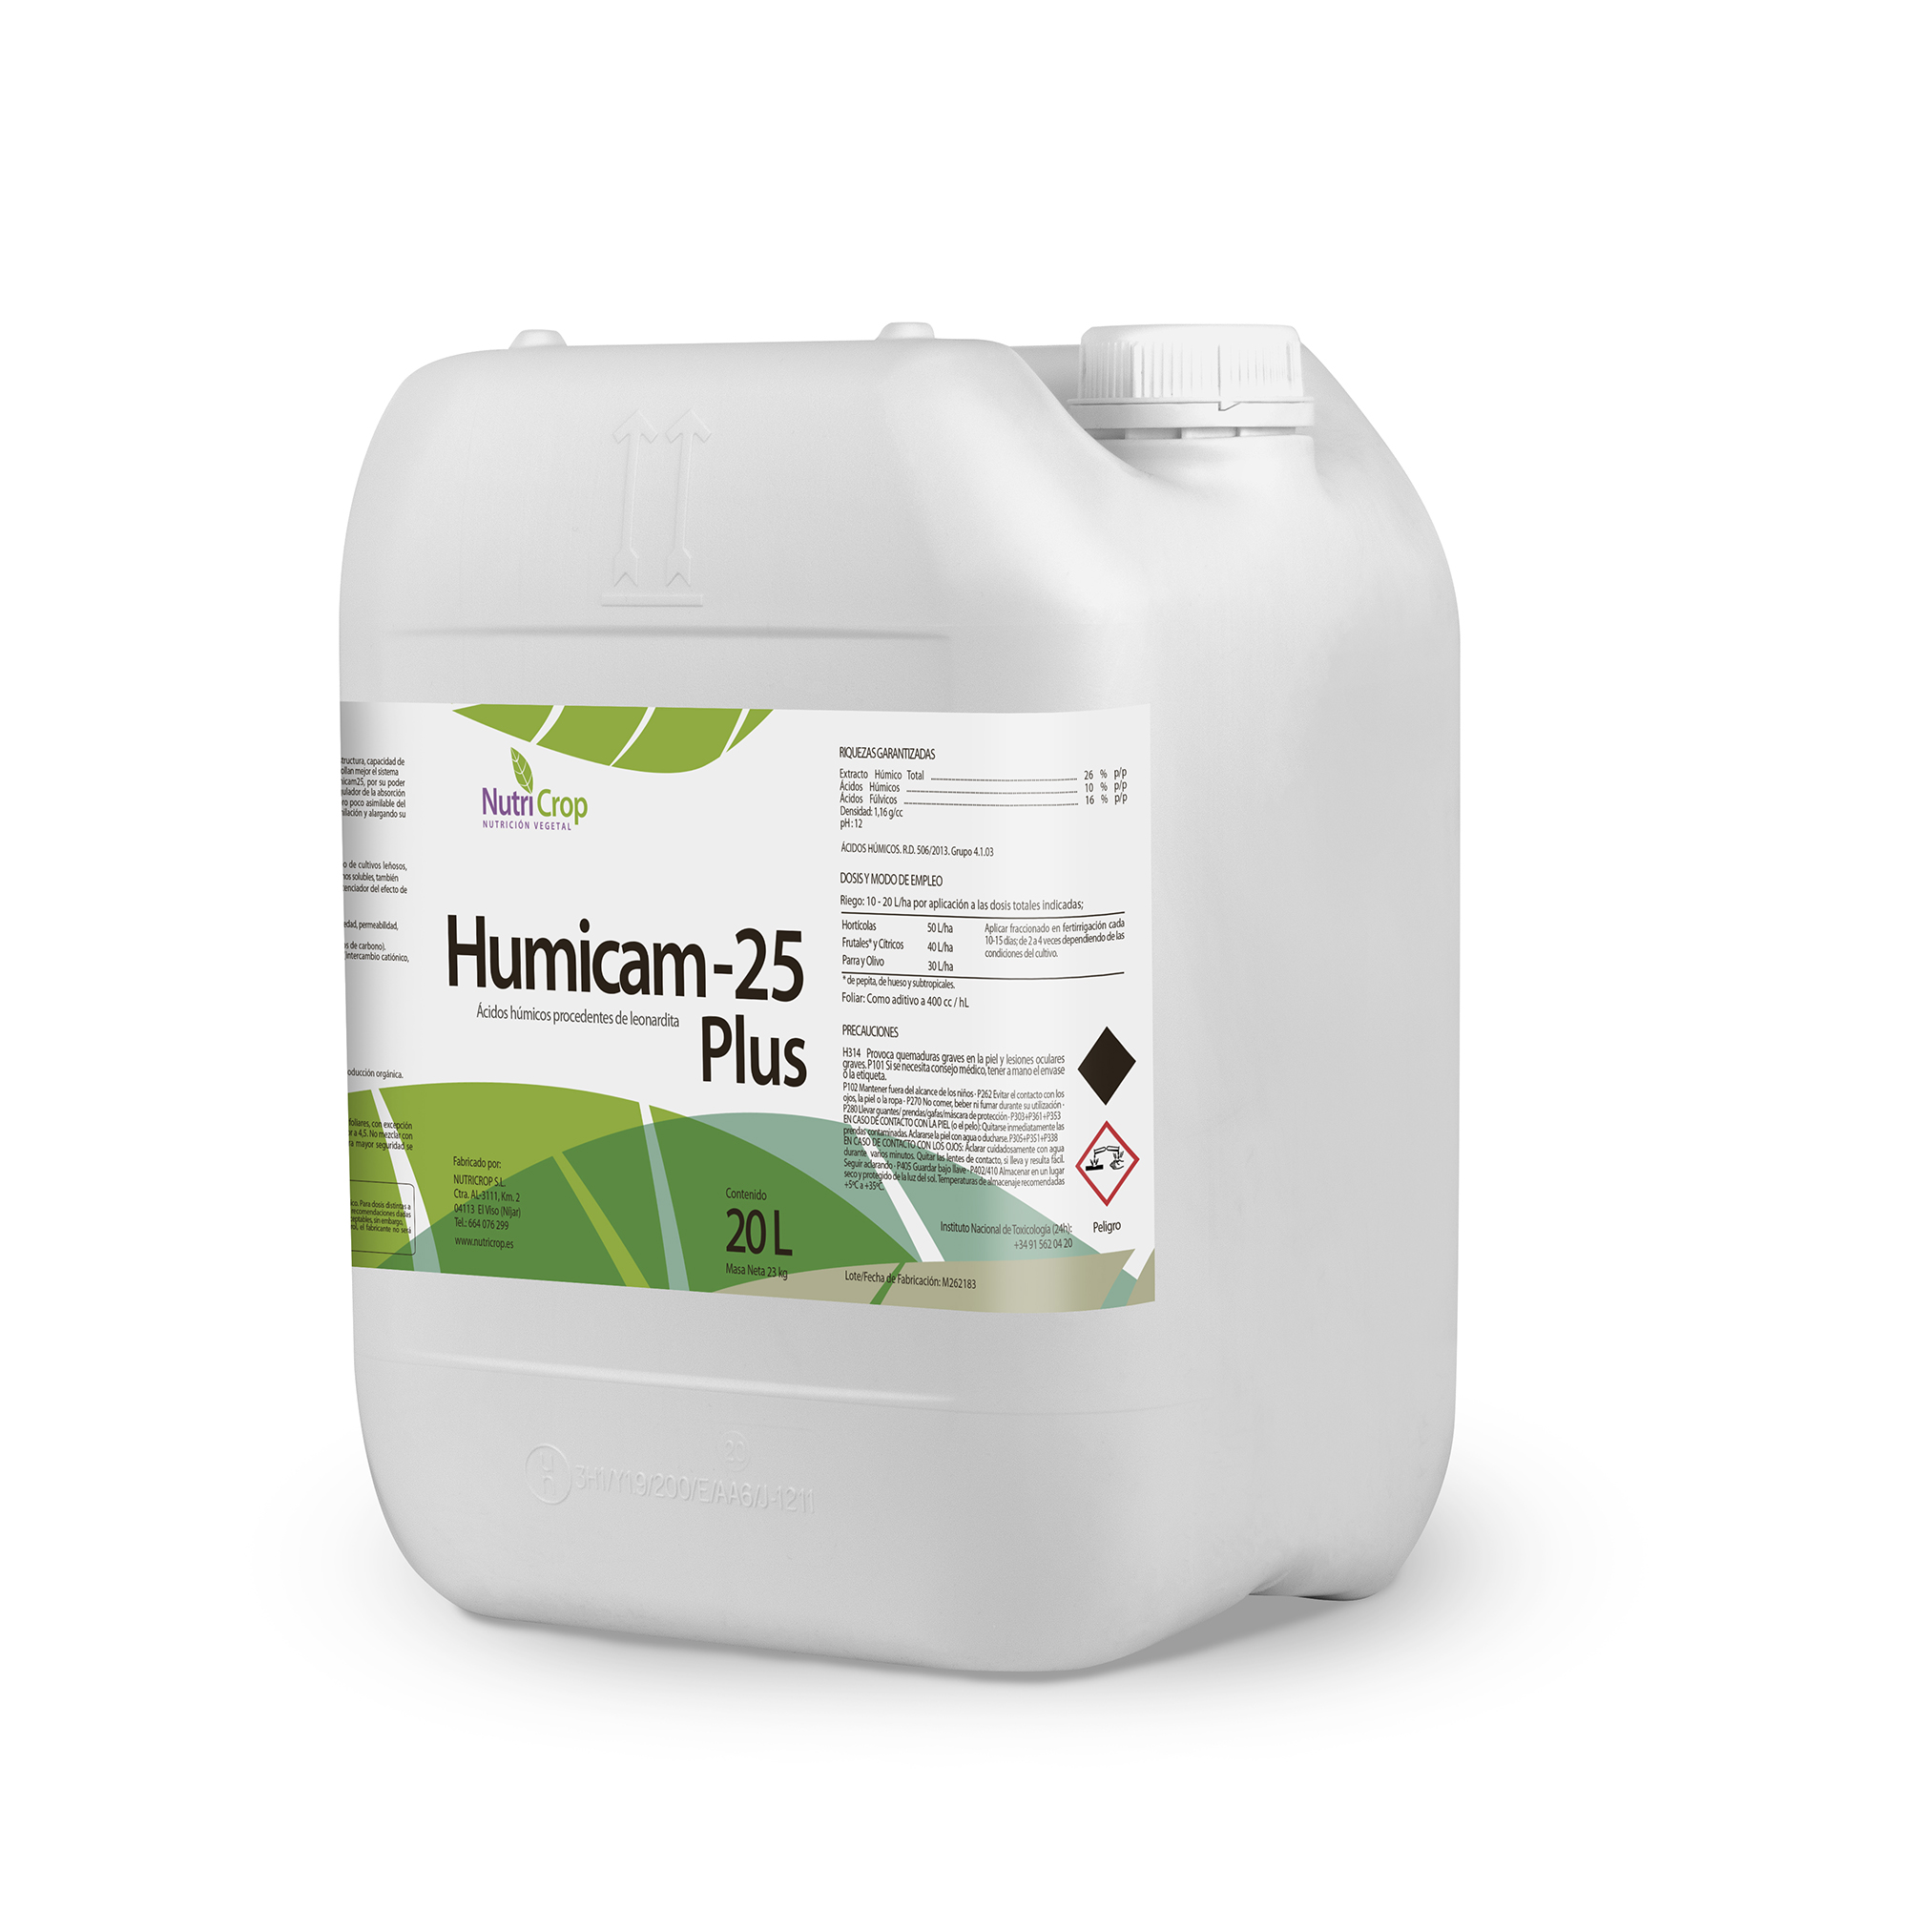 Humicam-25 plus - Nutricrop